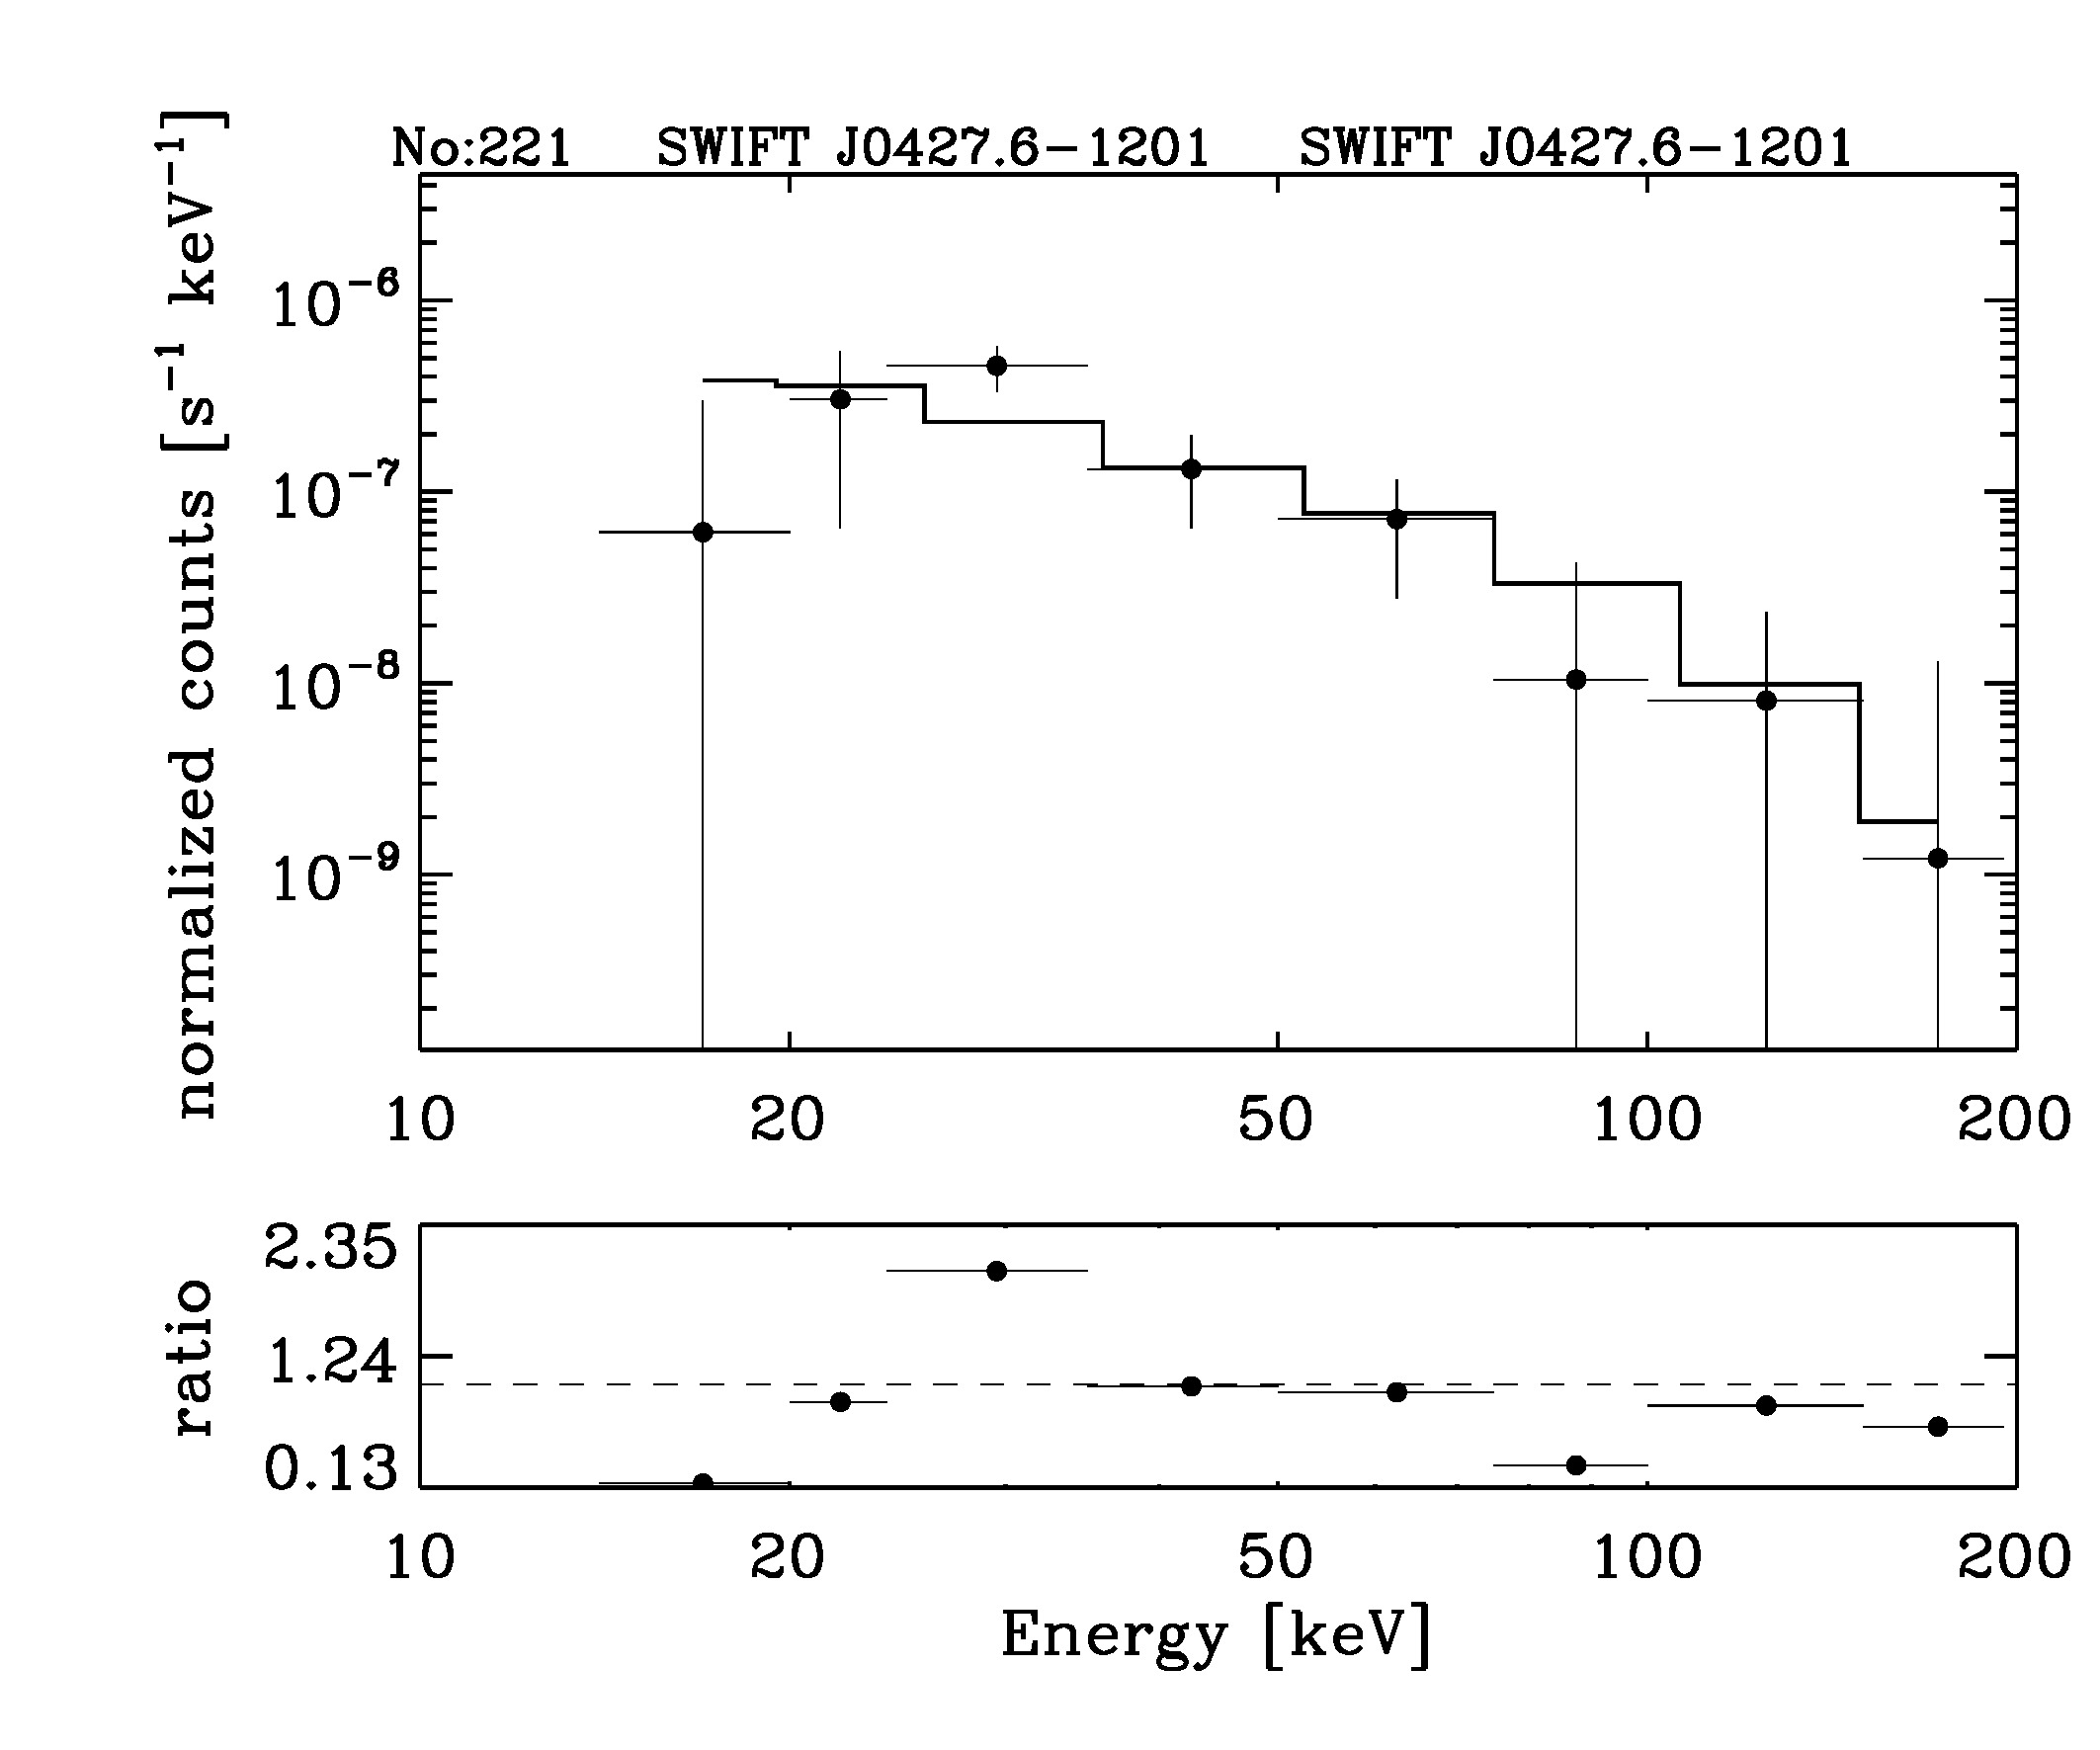 BAT Spectrum for SWIFT J0427.6-1201